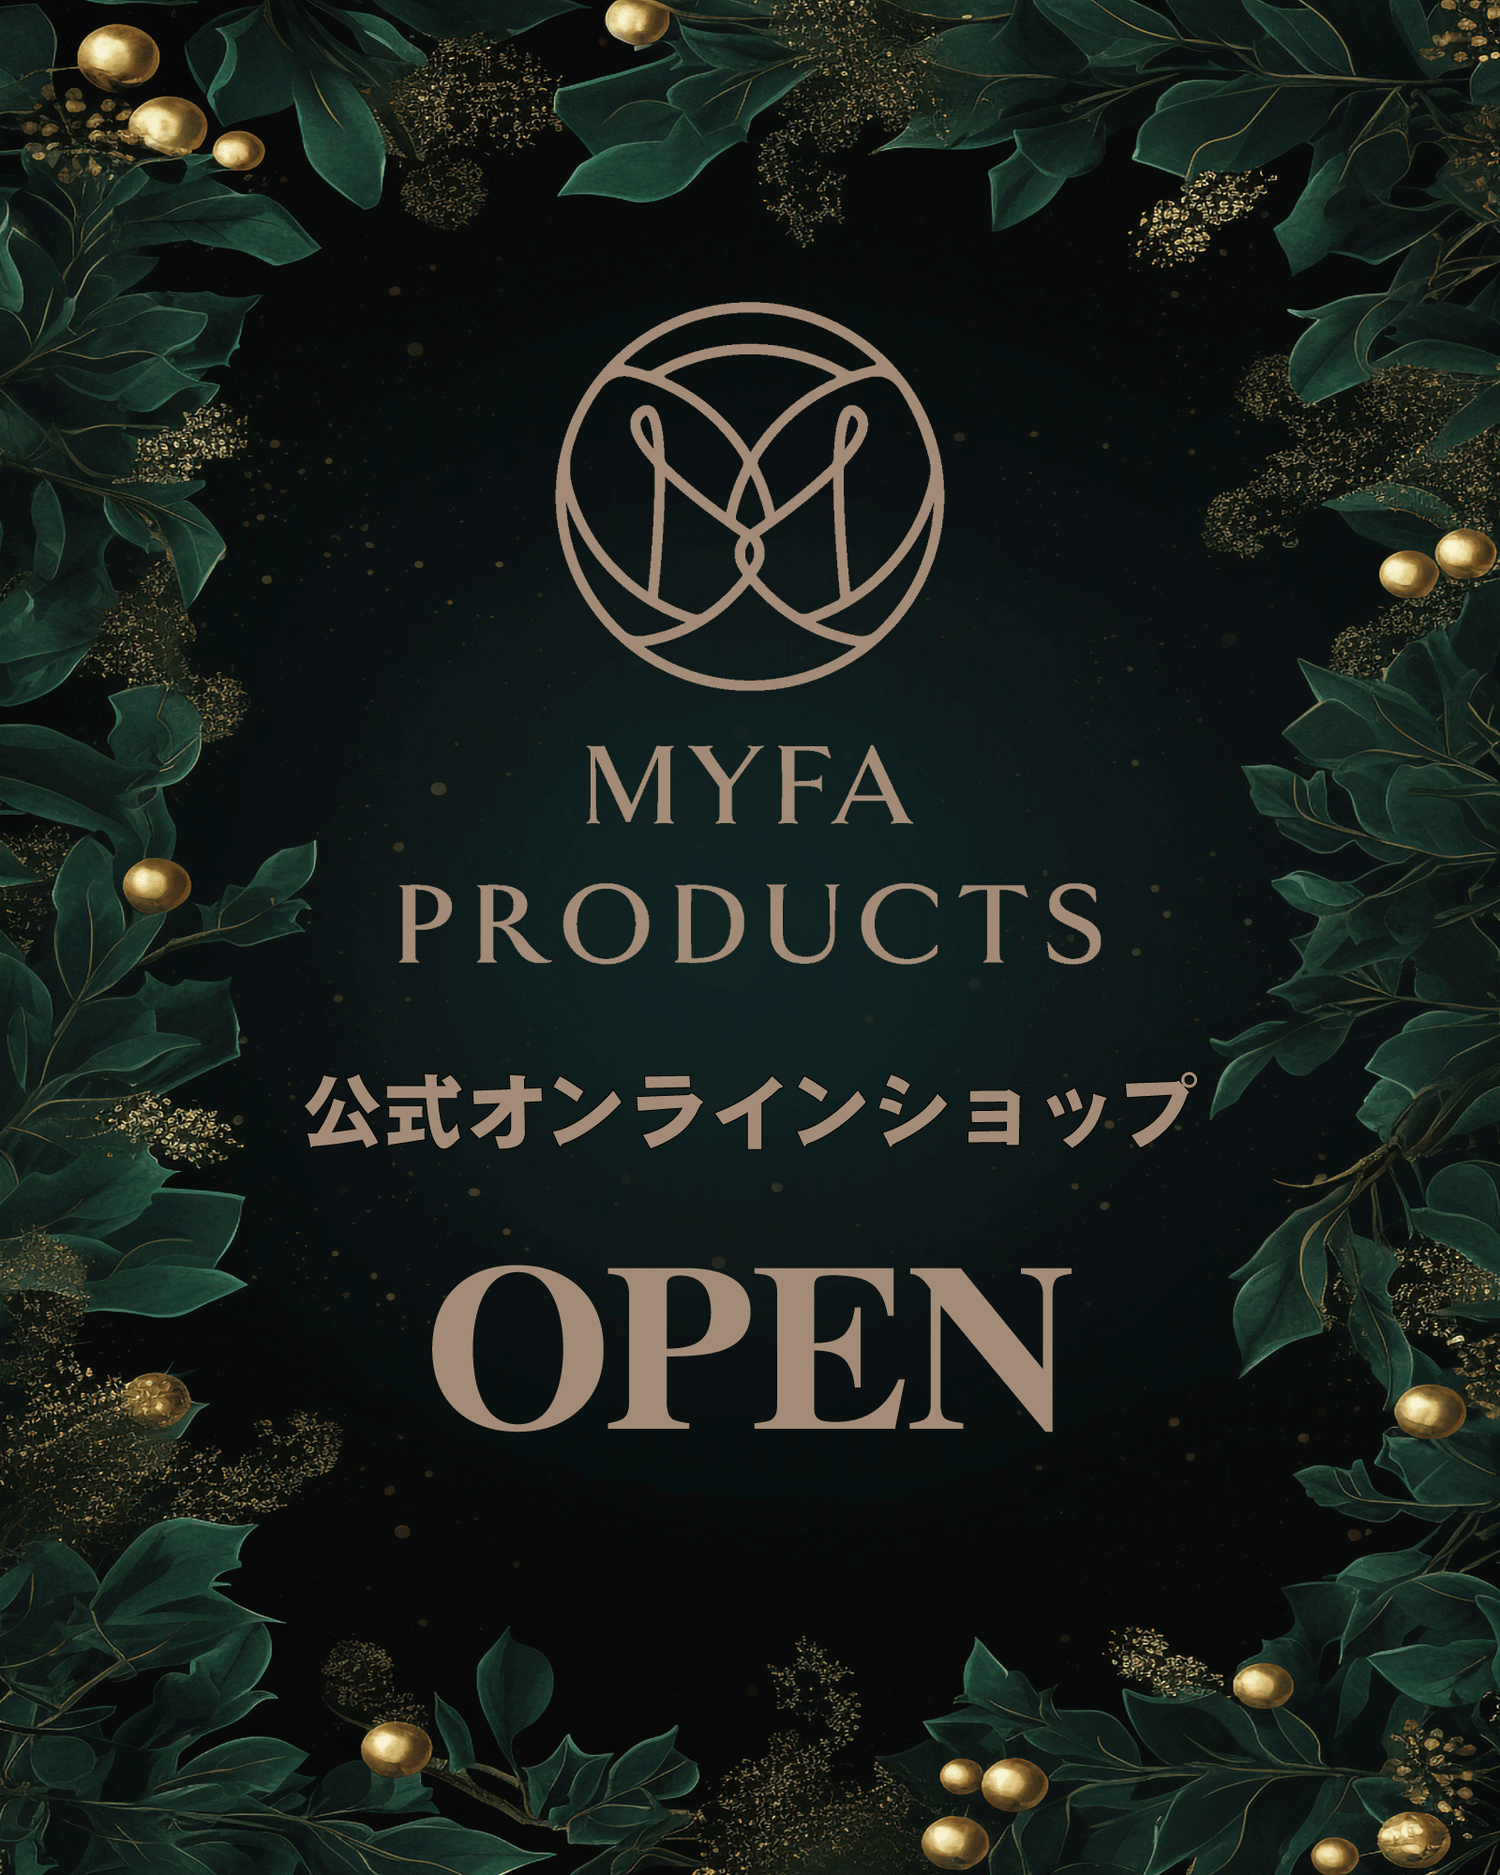 MYFA PRODUCTS (マイファプロダクツ) 公式オンラインショップ OPEN